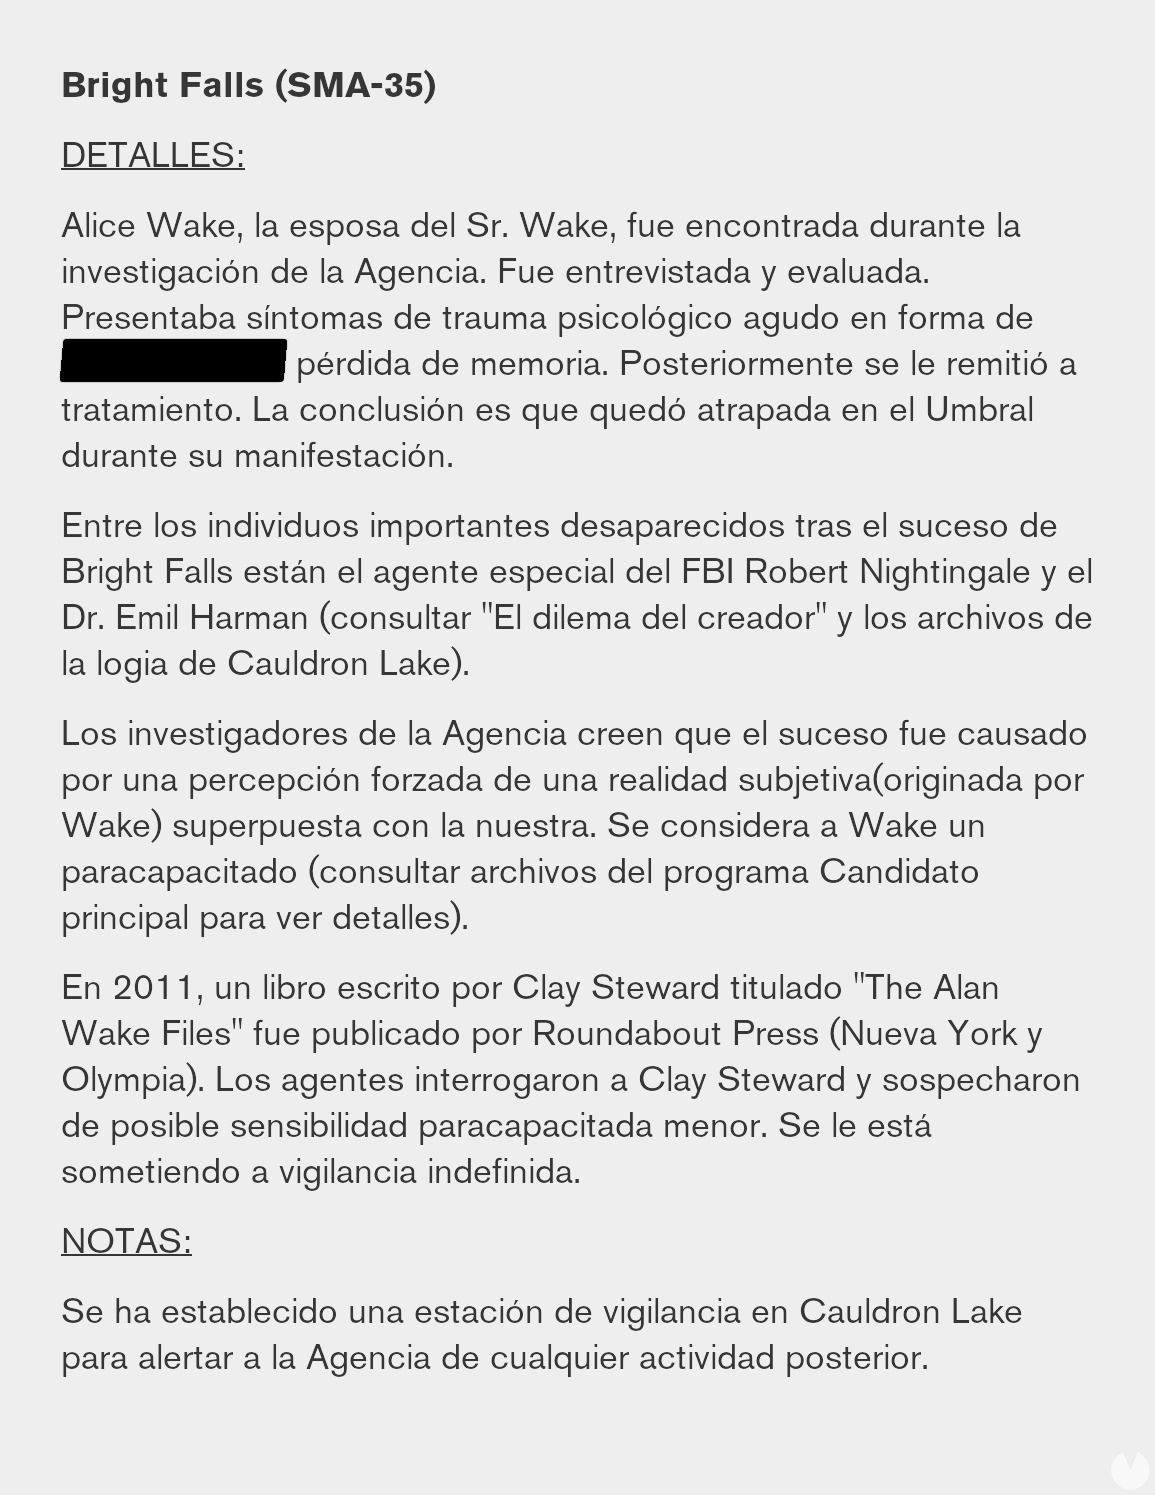 Control: Las conexiones y pistas con el futuro de Alan Wake